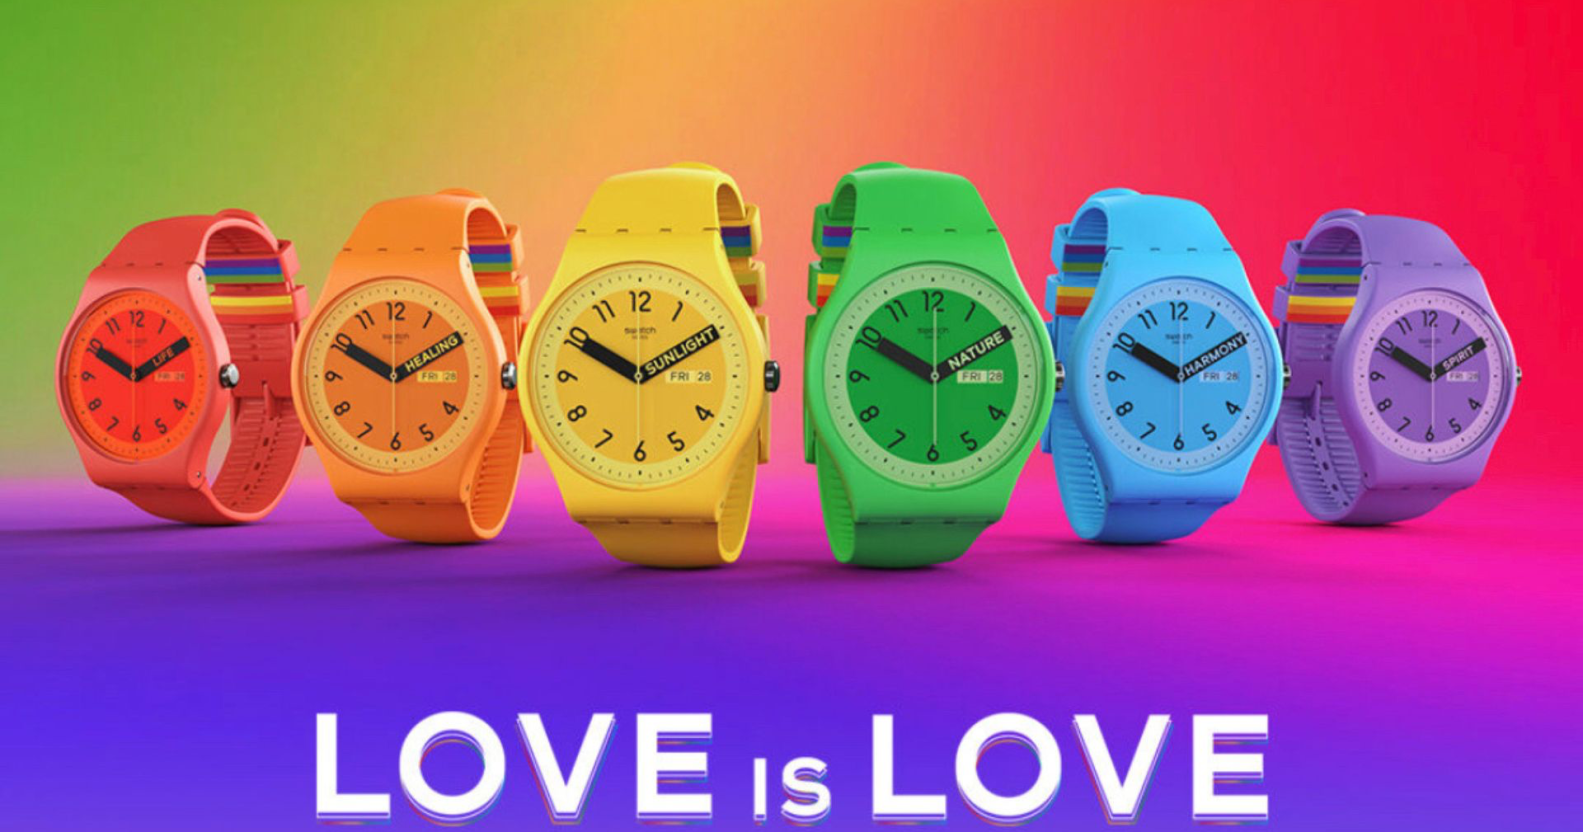 马来西亚查获彩虹骄傲主题的 Swatch 手表 – PinkNews